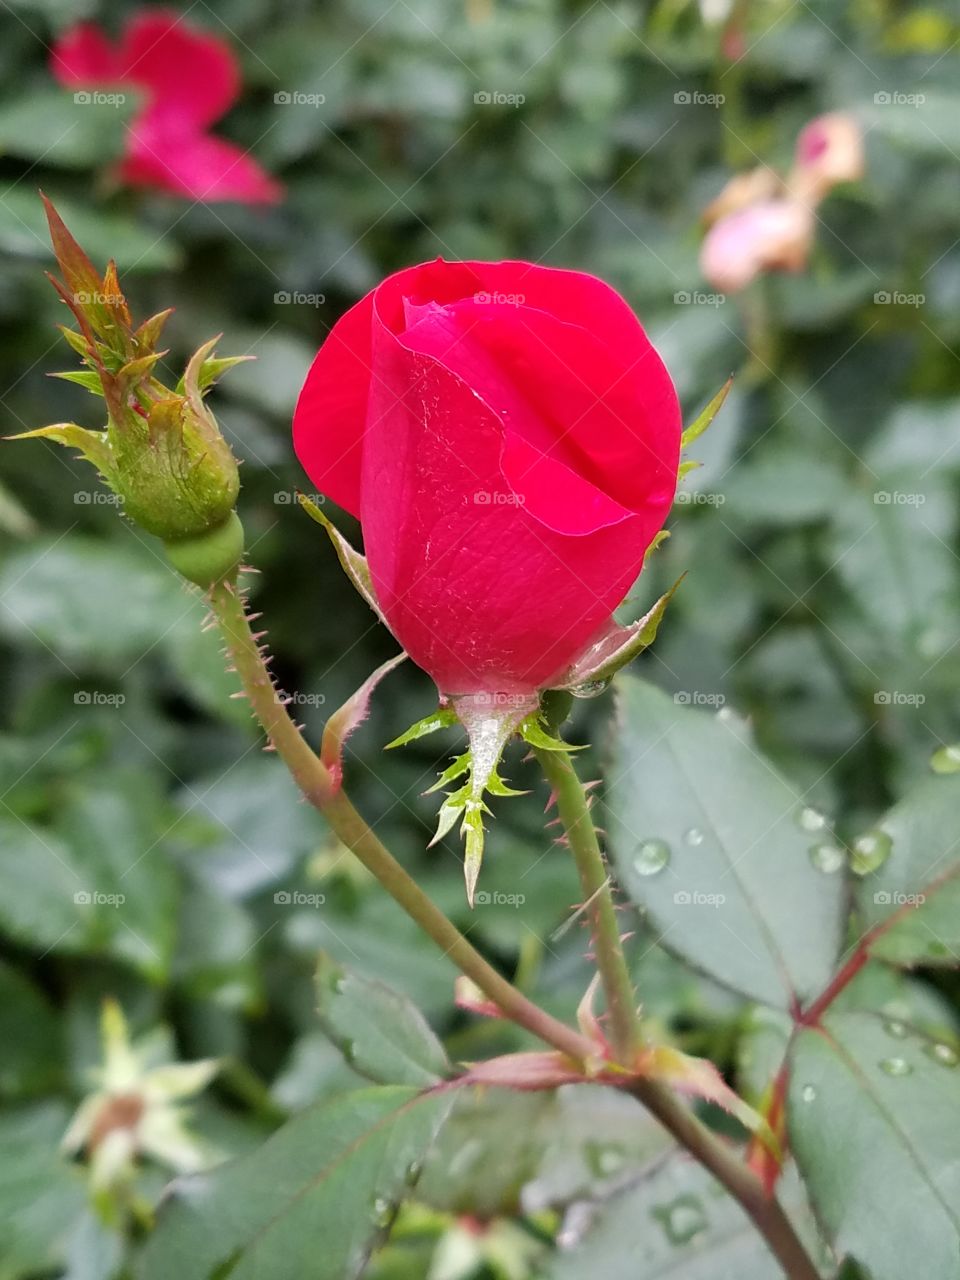 'Ere a Rose